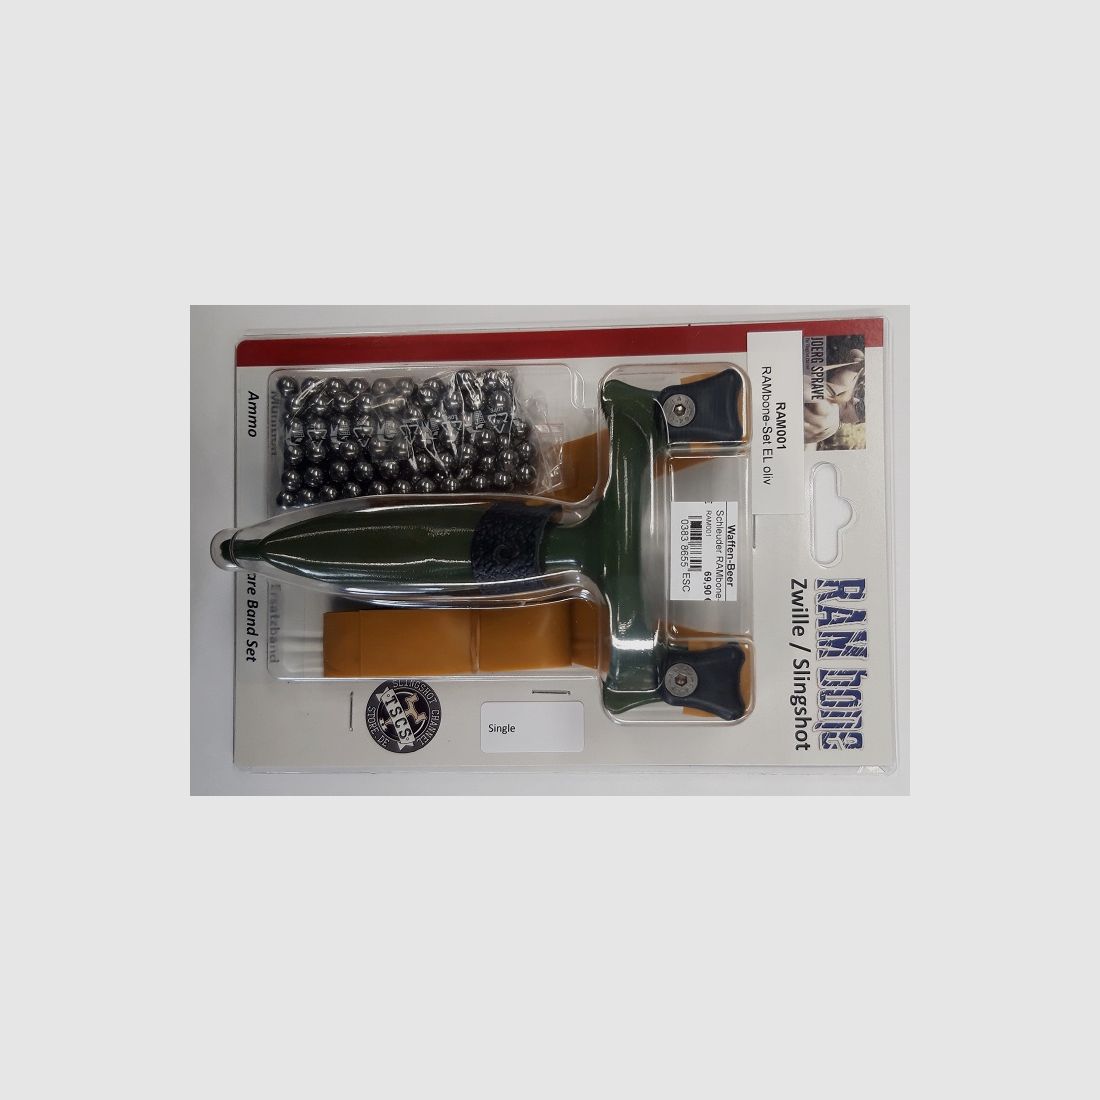 ESC RAMbone Schleuder olive inkl. Ersatzband + Kugeln Sportzubehör